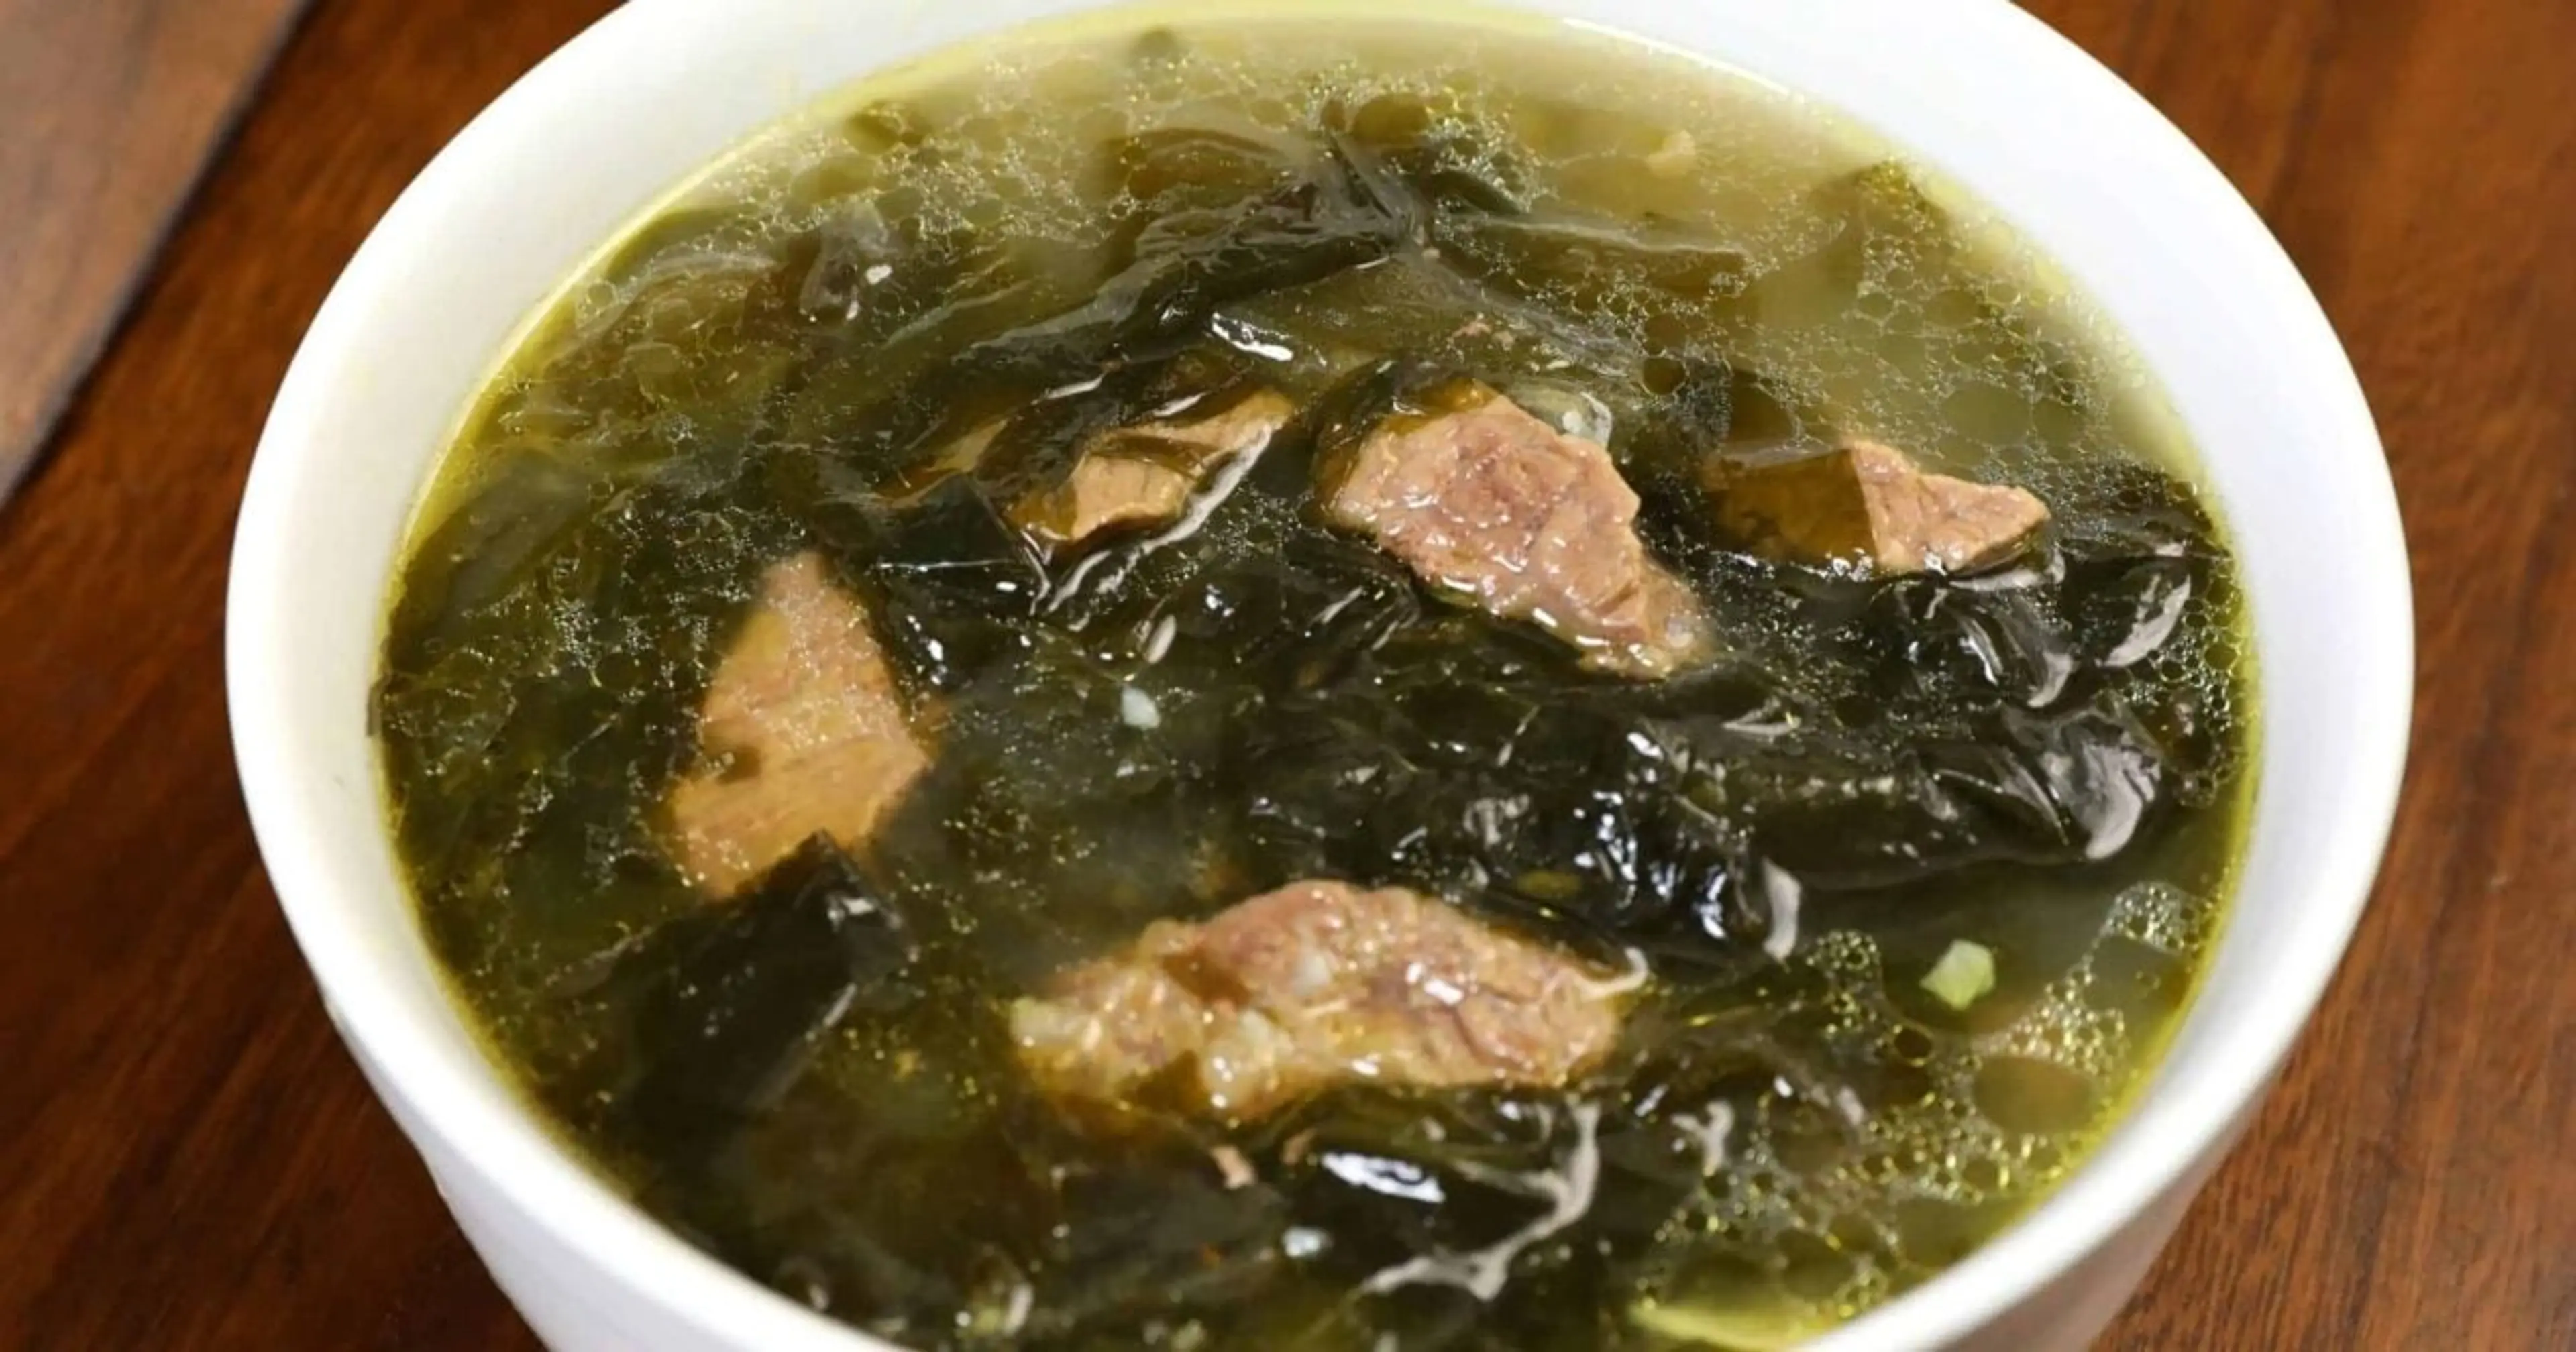 Seaweed soup with beef (Miyeokguk)